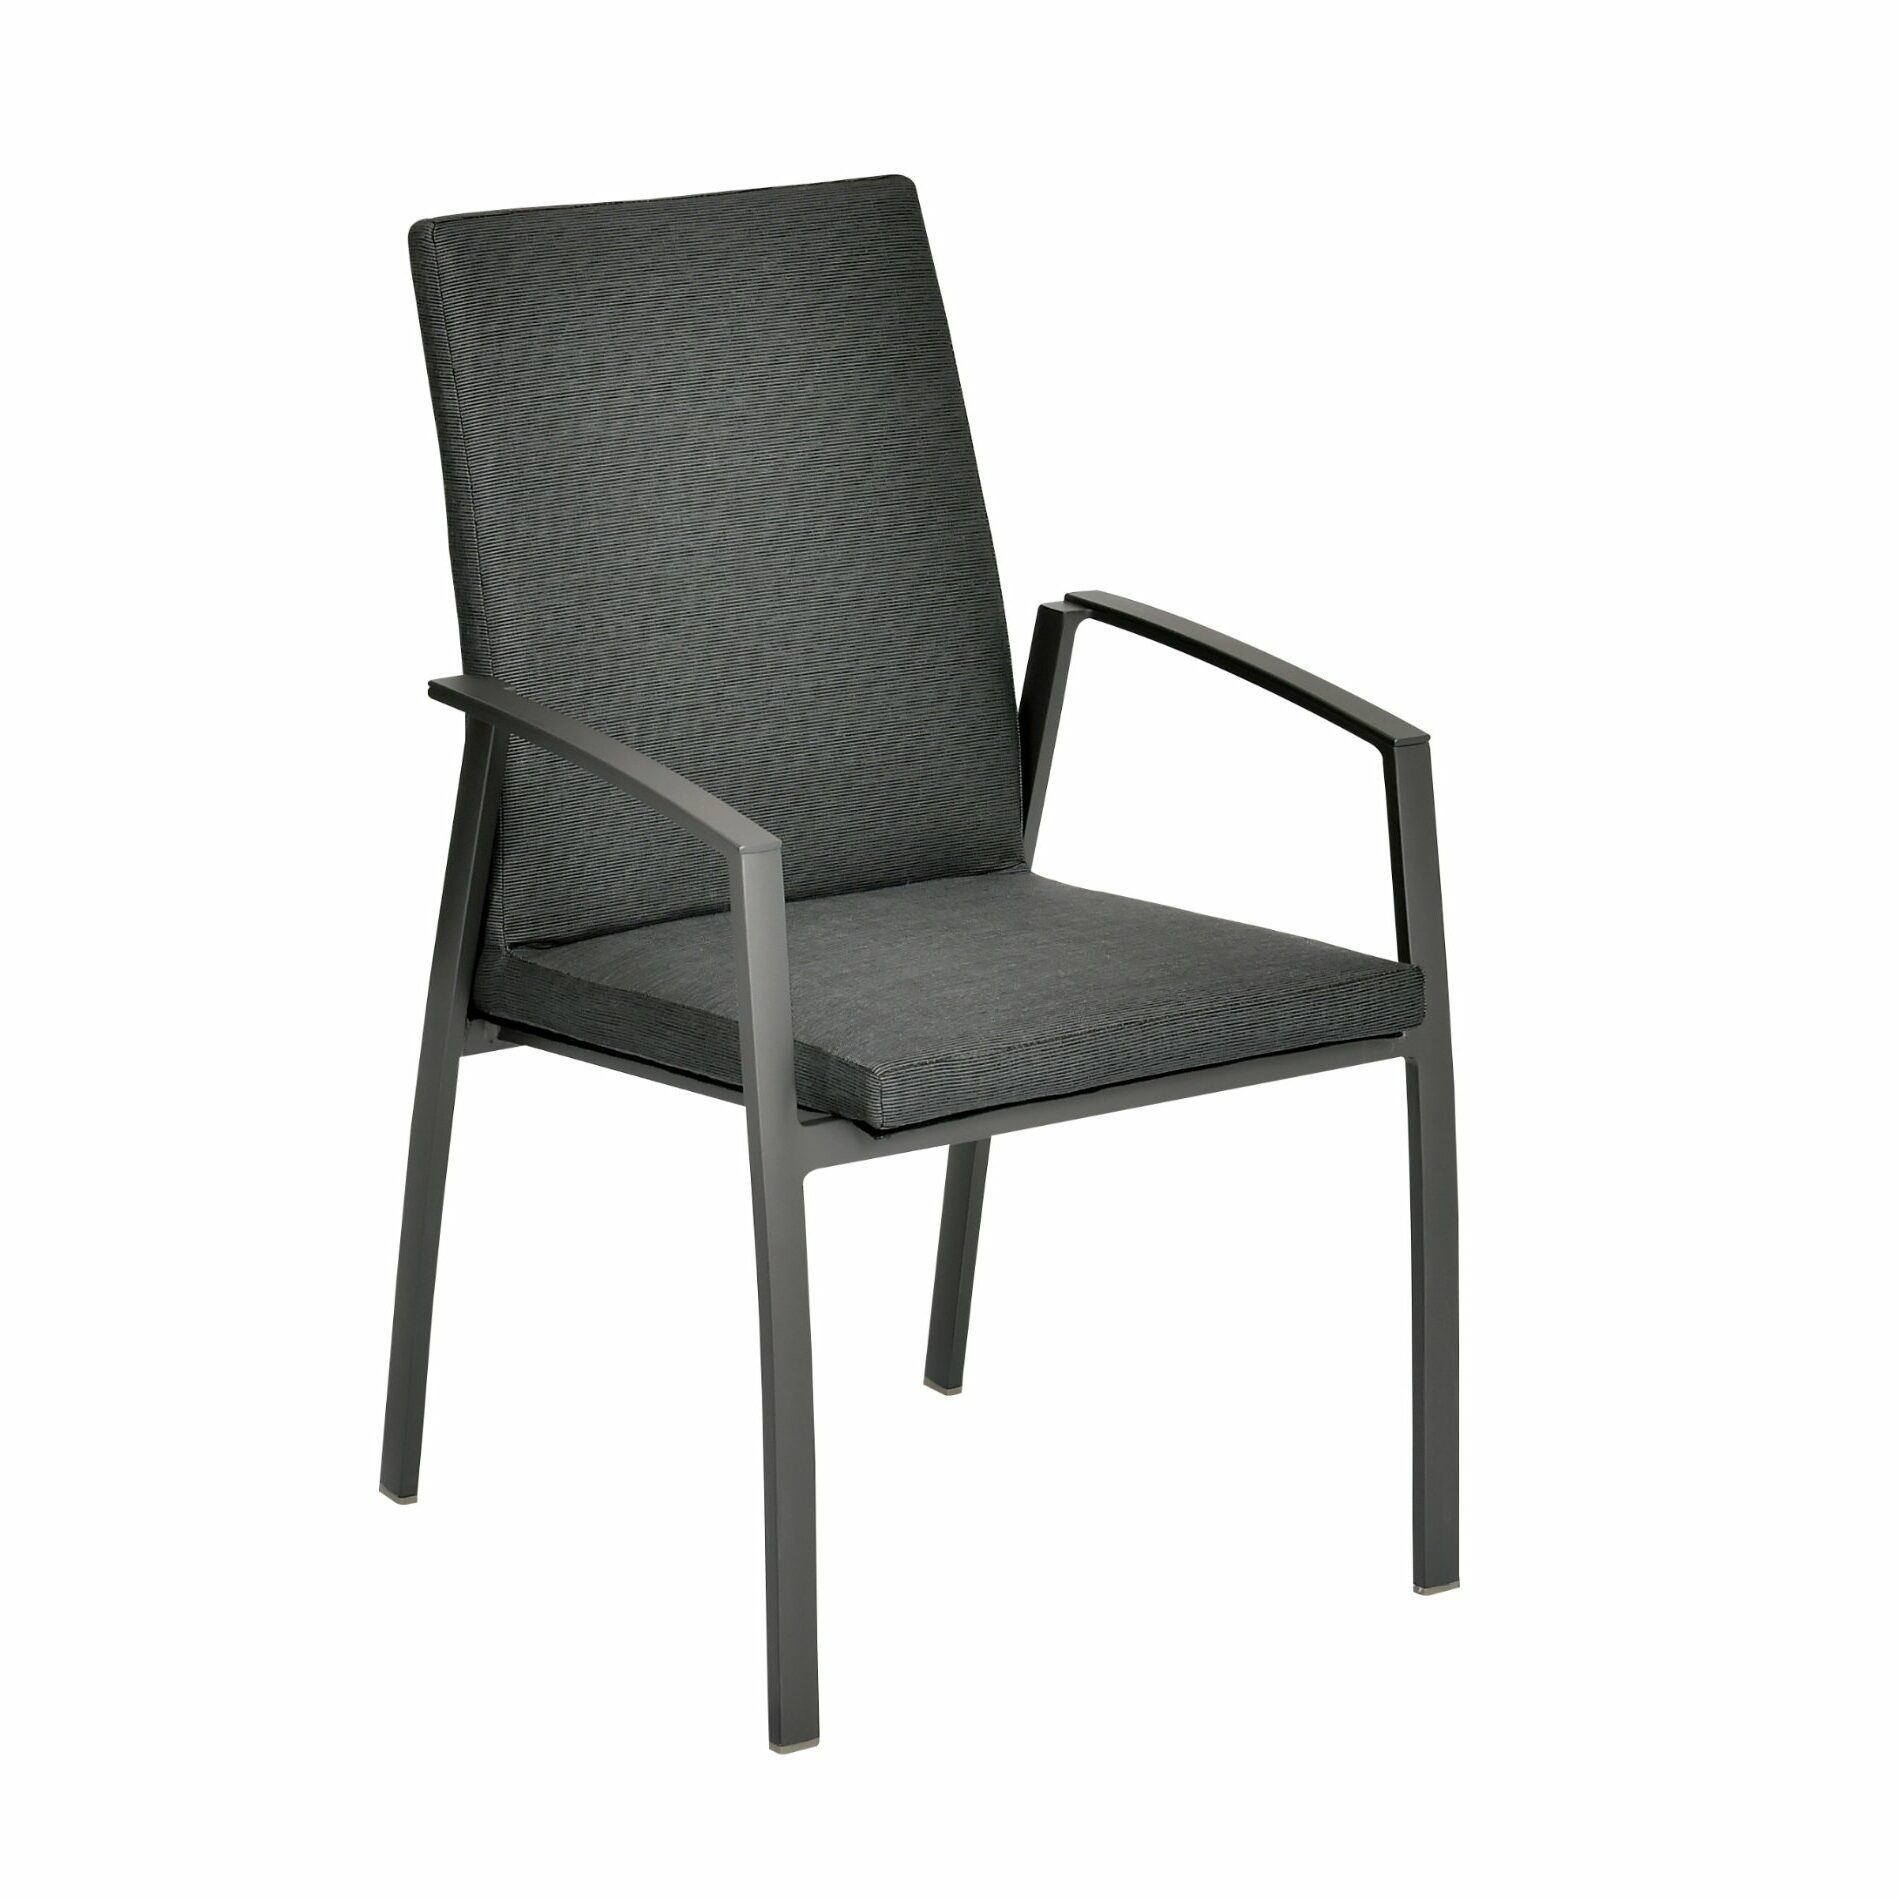 SIT Mobilia "Portimao" Stapelstuhl, Gestell Aluminium eisengrau, Sitzfläche Textilgewebe Eden black, gepolstert